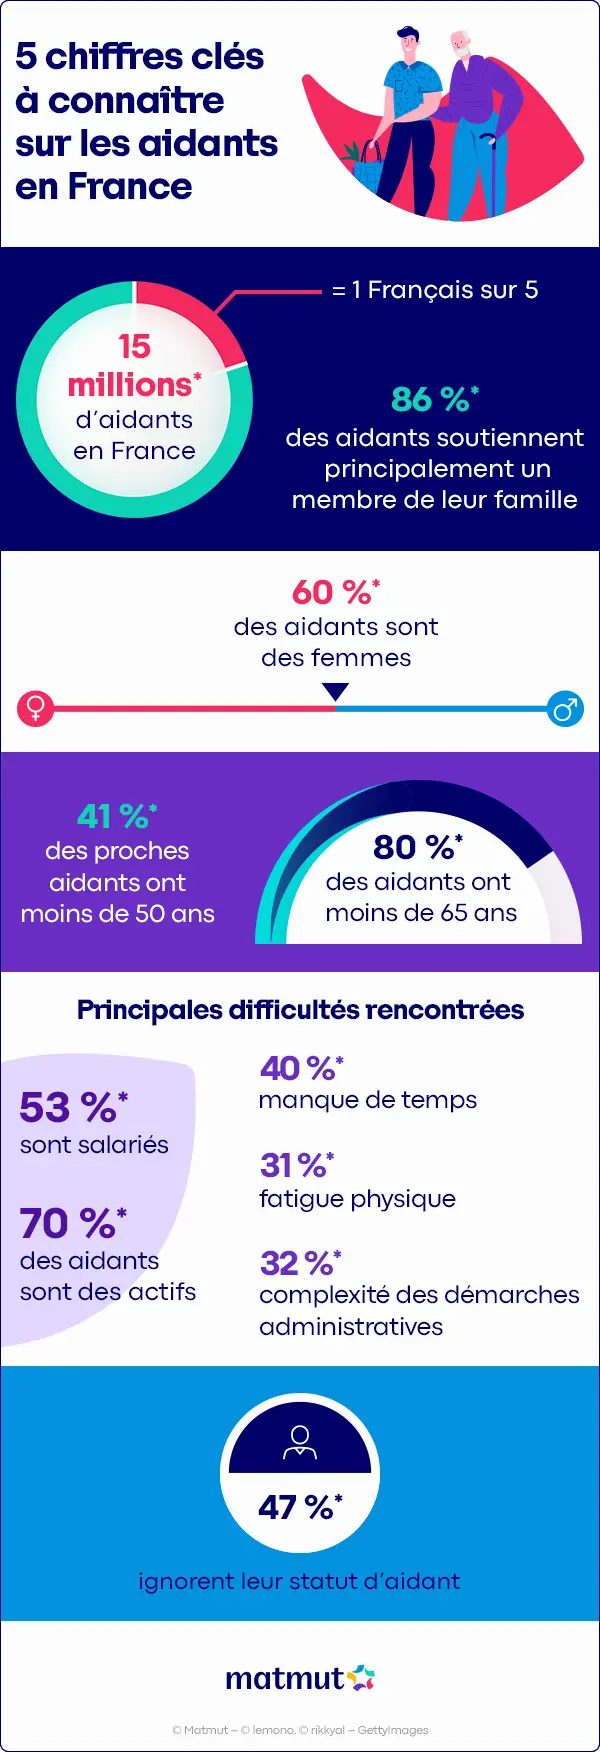 Infographie les chiffres clés sur les aidants en France